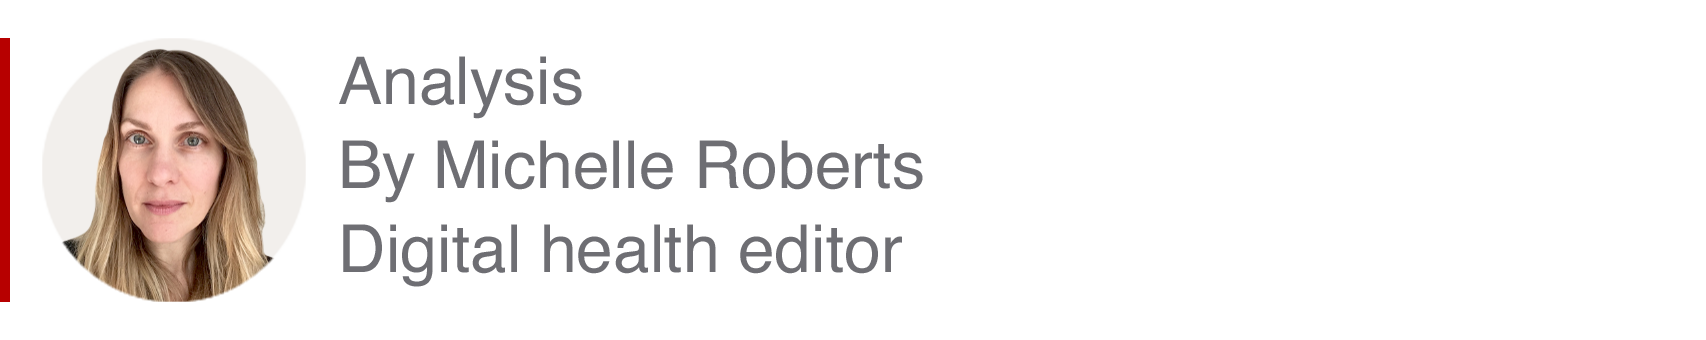 Boîte d'analyse par Michelle Roberts, rédactrice en chef de la santé